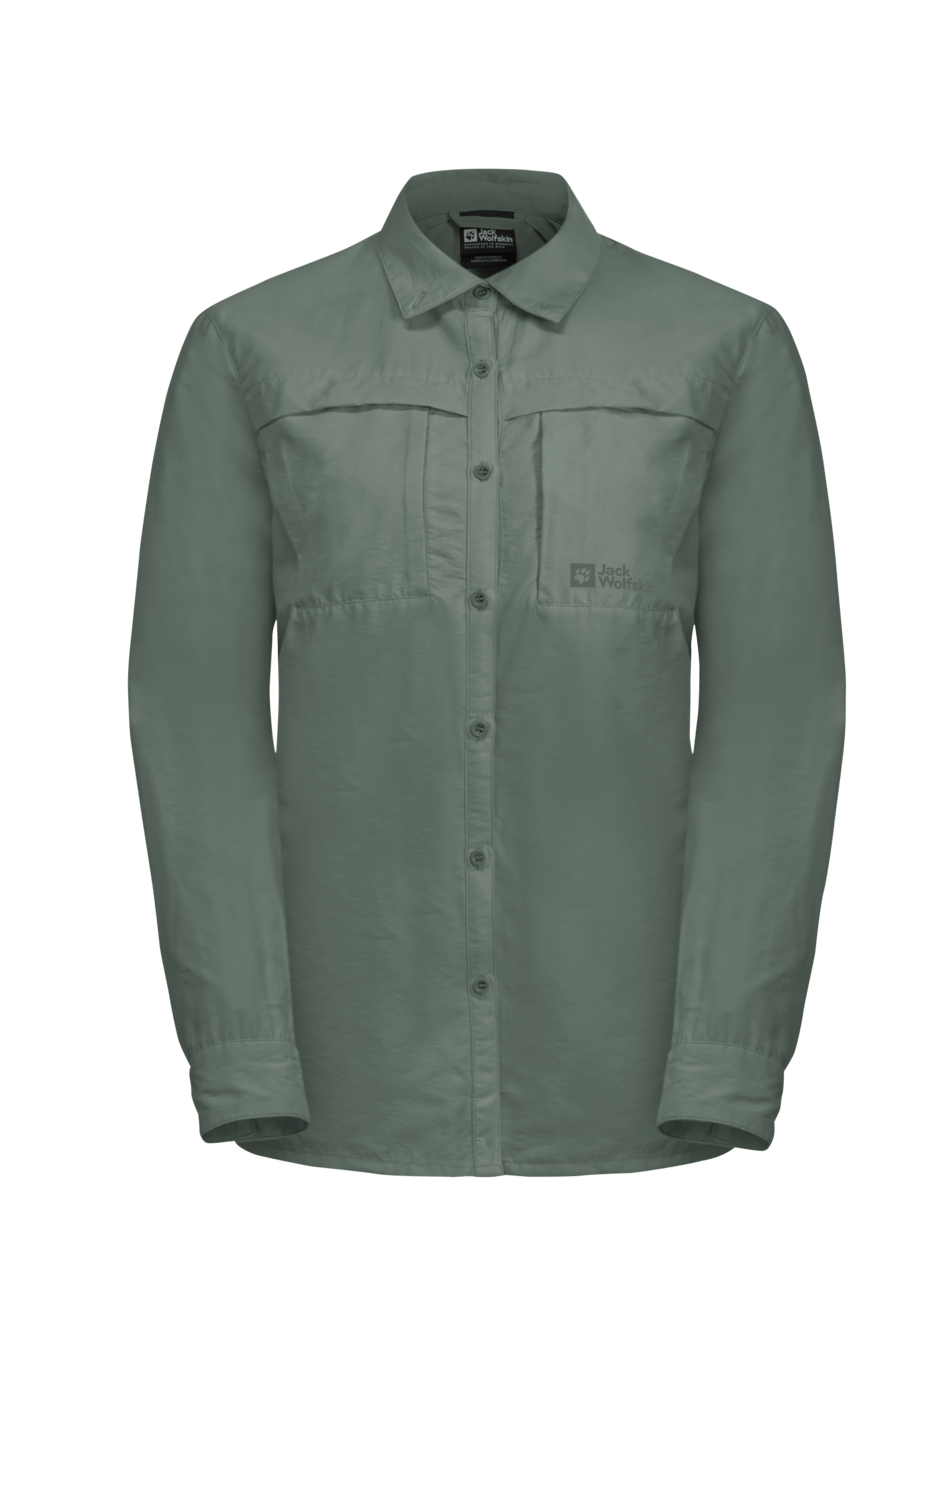 Jack Wolfskin Women's Barrier Long Sleeve Shirt Hedge Green